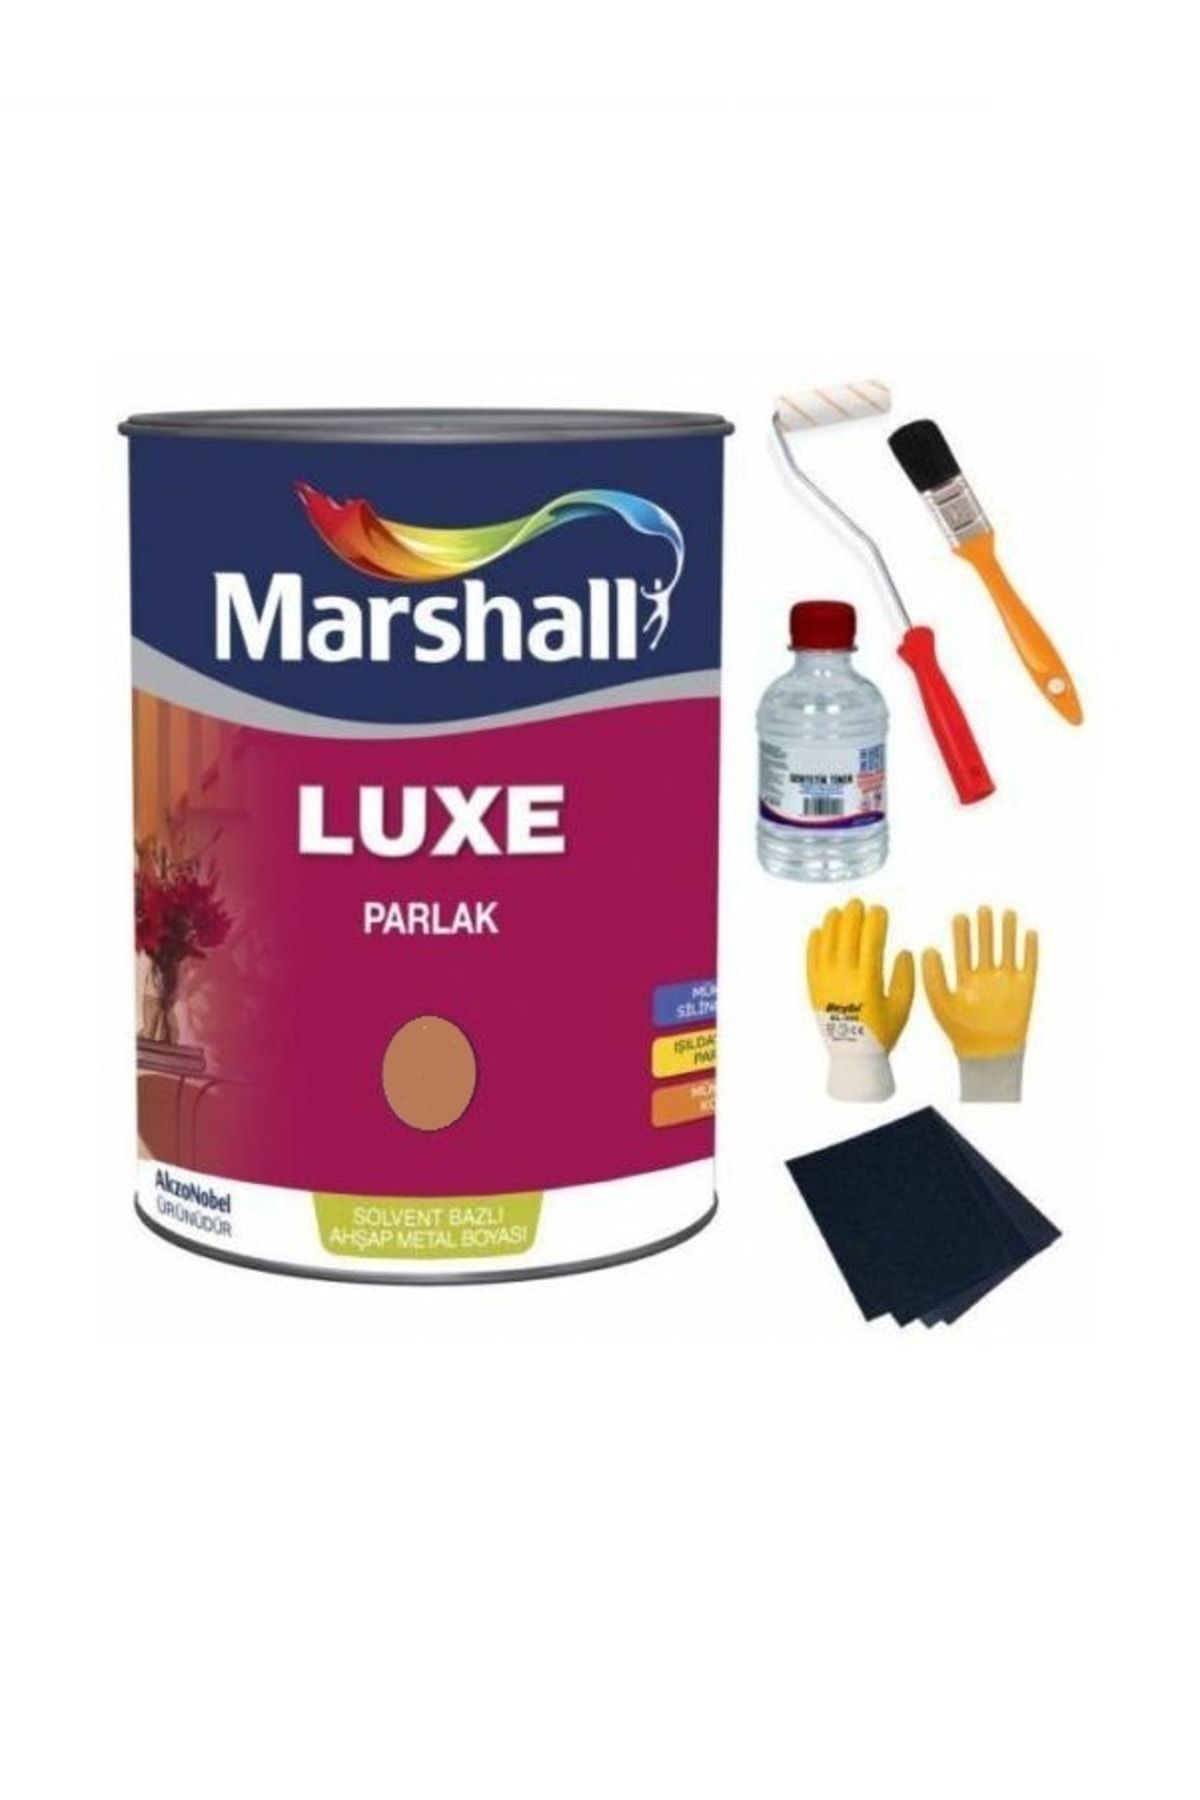 Marshall Luxe Parlak Solvent Bazlı Ahşap Ve Metal Boya Yağlı Boya 2.5 lt Açık Kahve+boya Takımı